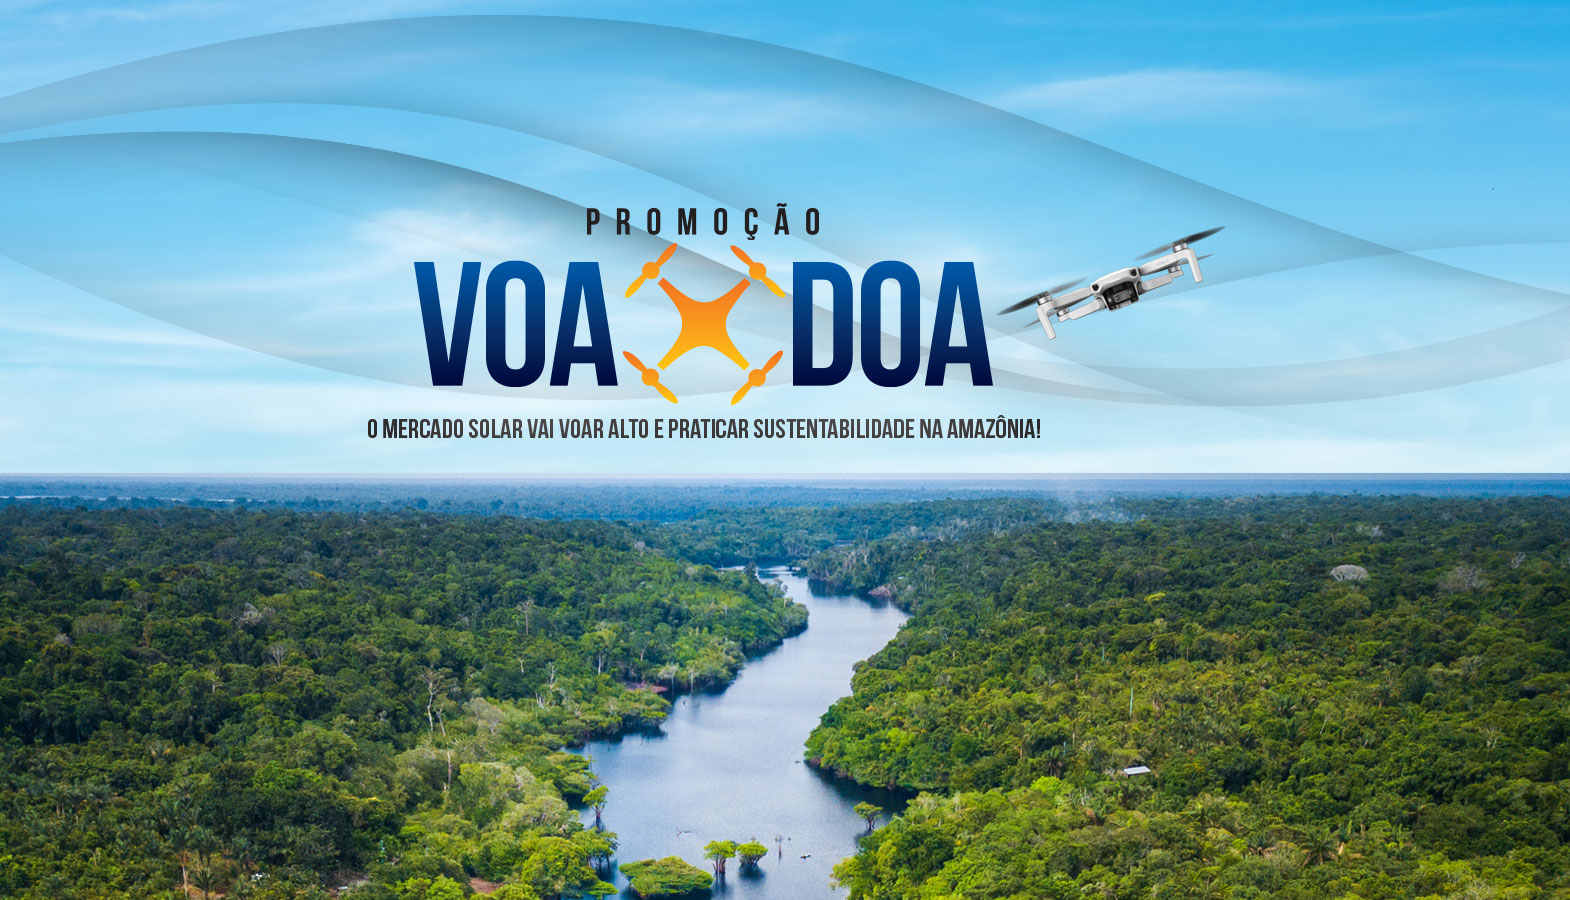 Voa-Doa Solar pela sustentabilidade na Amazônia